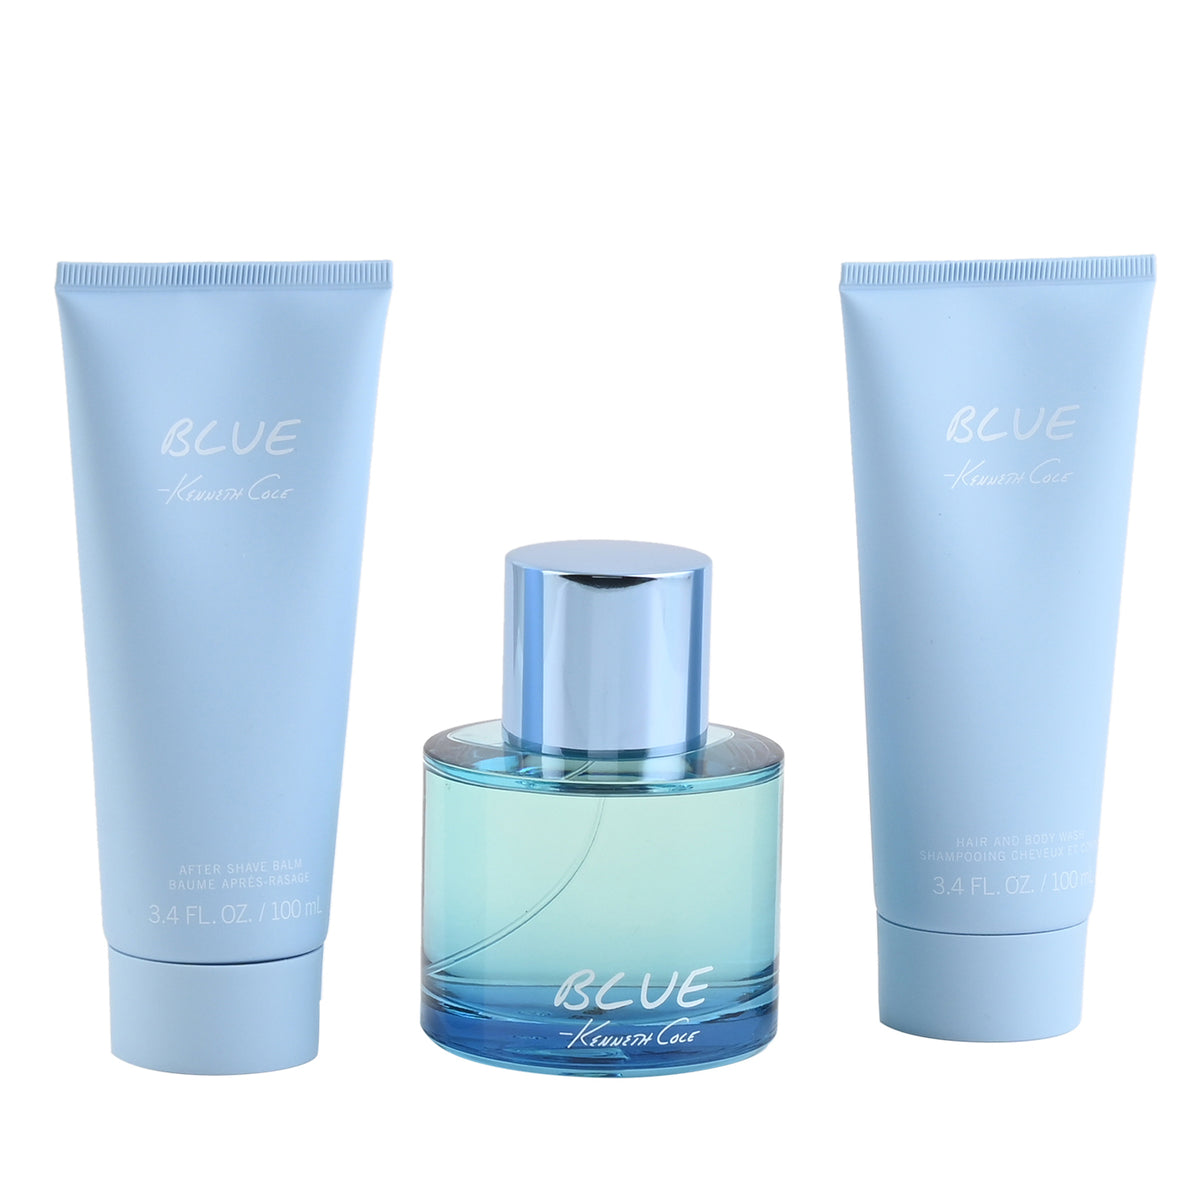 Chanel Bleu 3.4 oz / 100 ml Eau De Toilette Spray and After Shave Gift Set